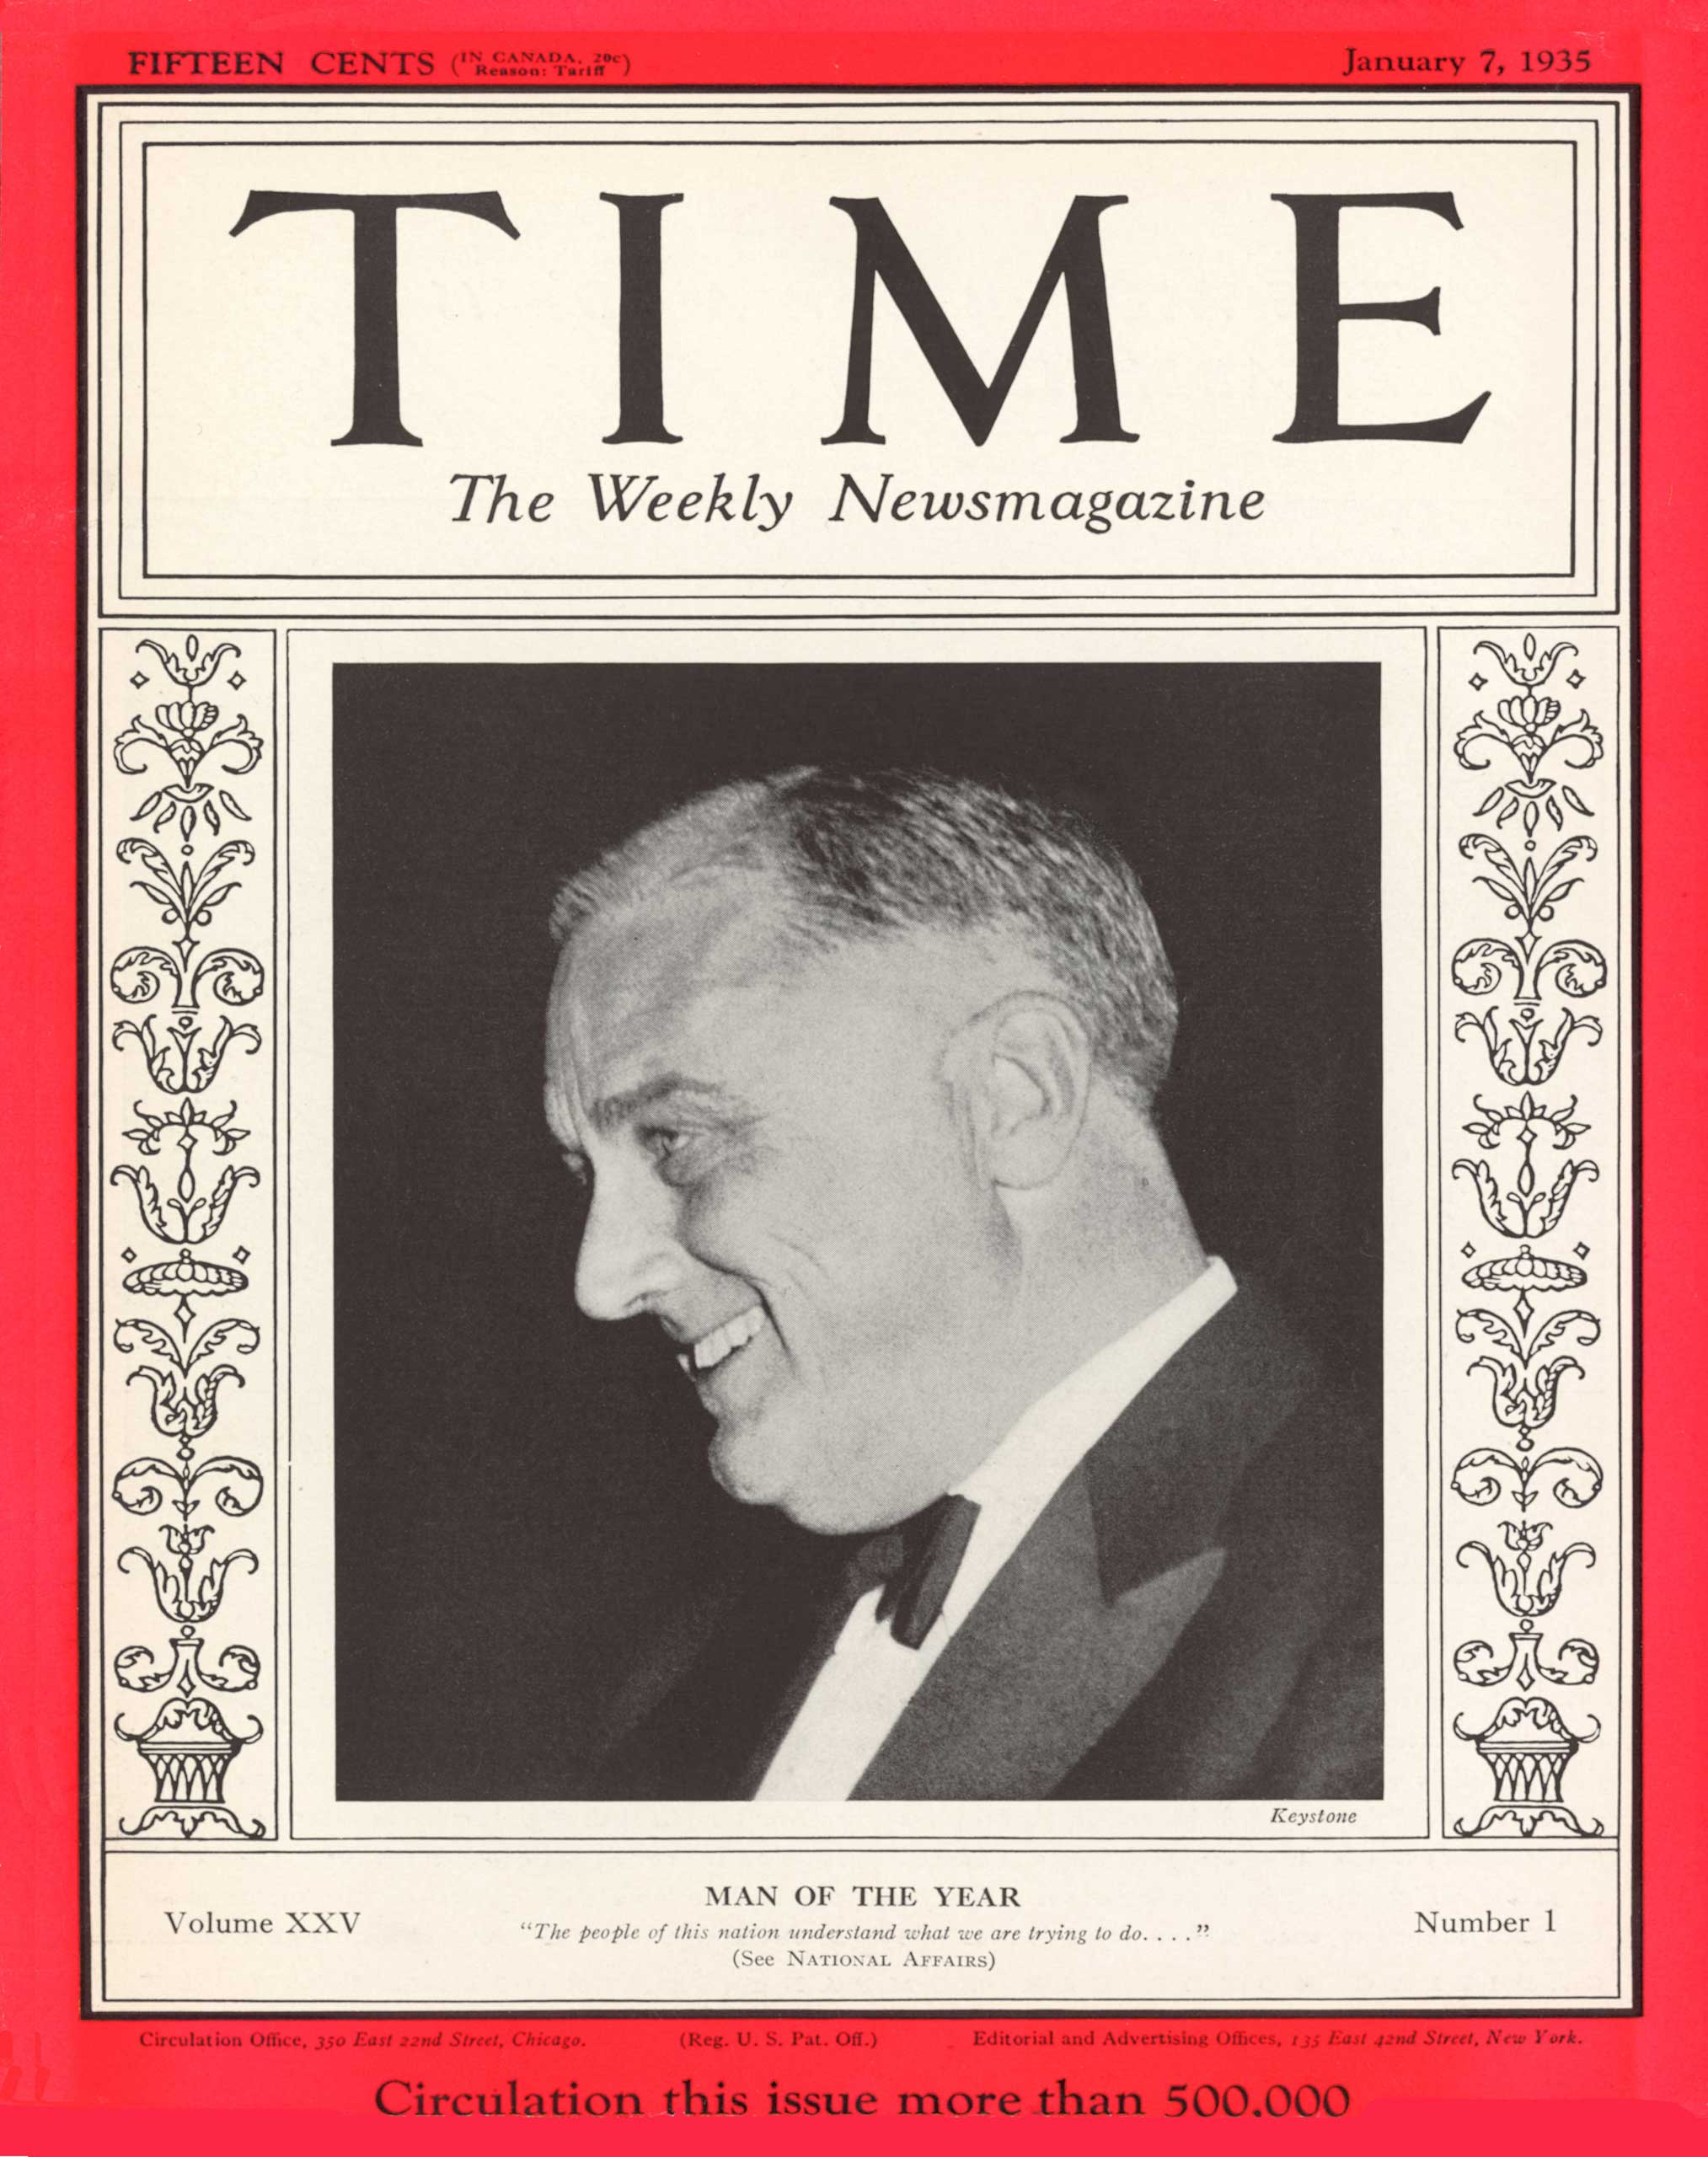 1934: President Franklin D. Roosevelt